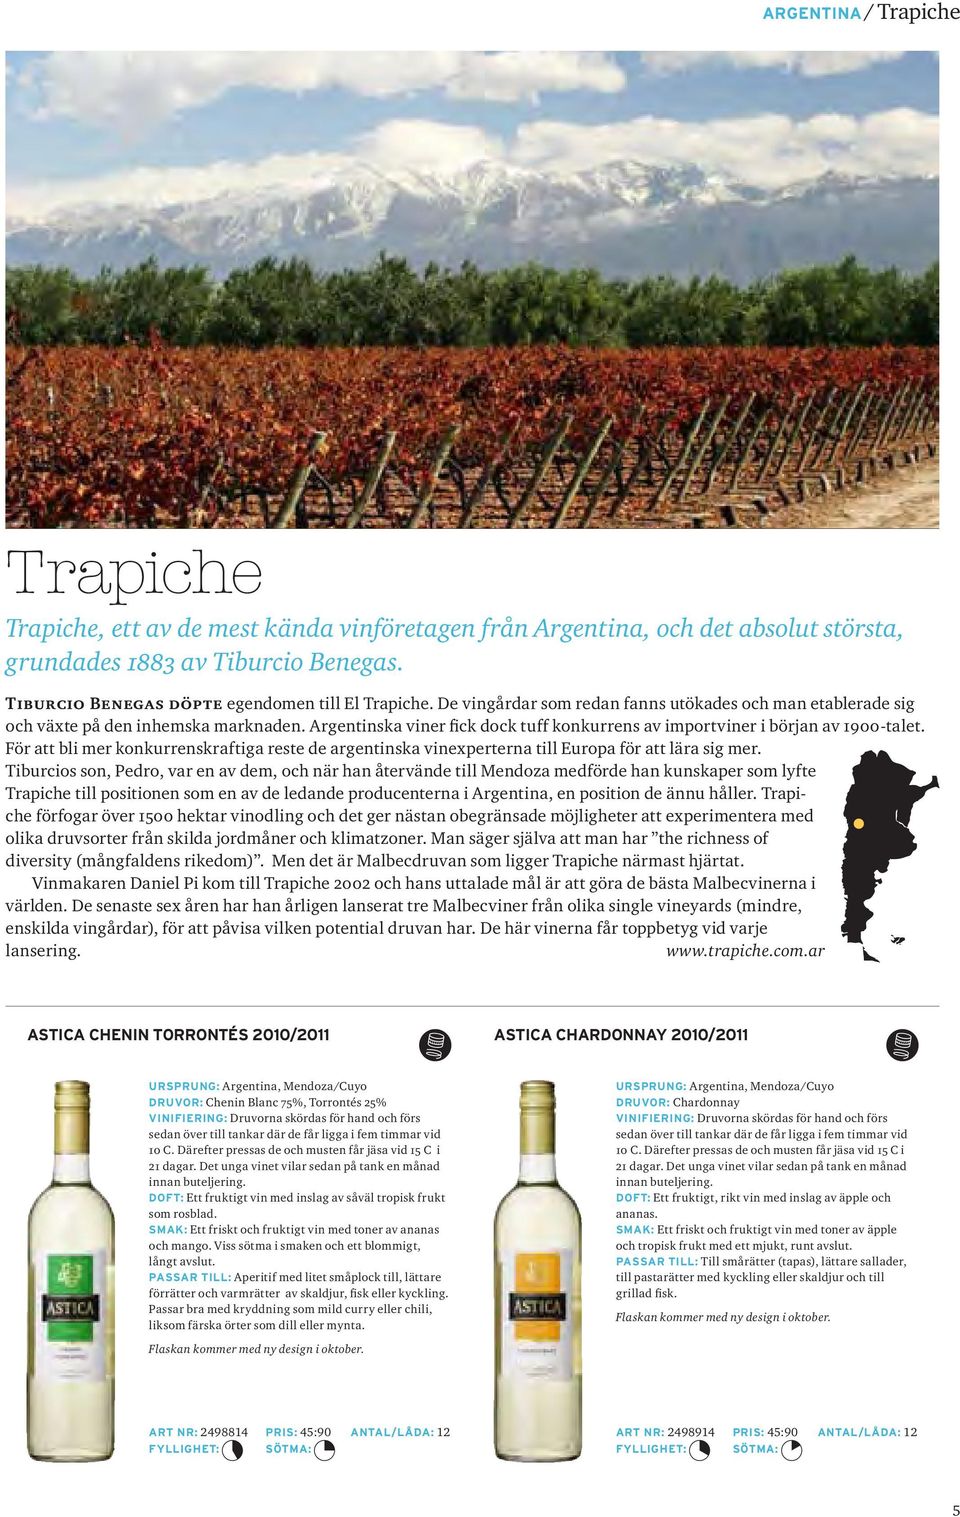 Argentinska viner fick dock tuff konkurrens av importviner i början av 1900-talet. För att bli mer konkurrenskraftiga reste de argentinska vinexperterna till Europa för att lära sig mer.